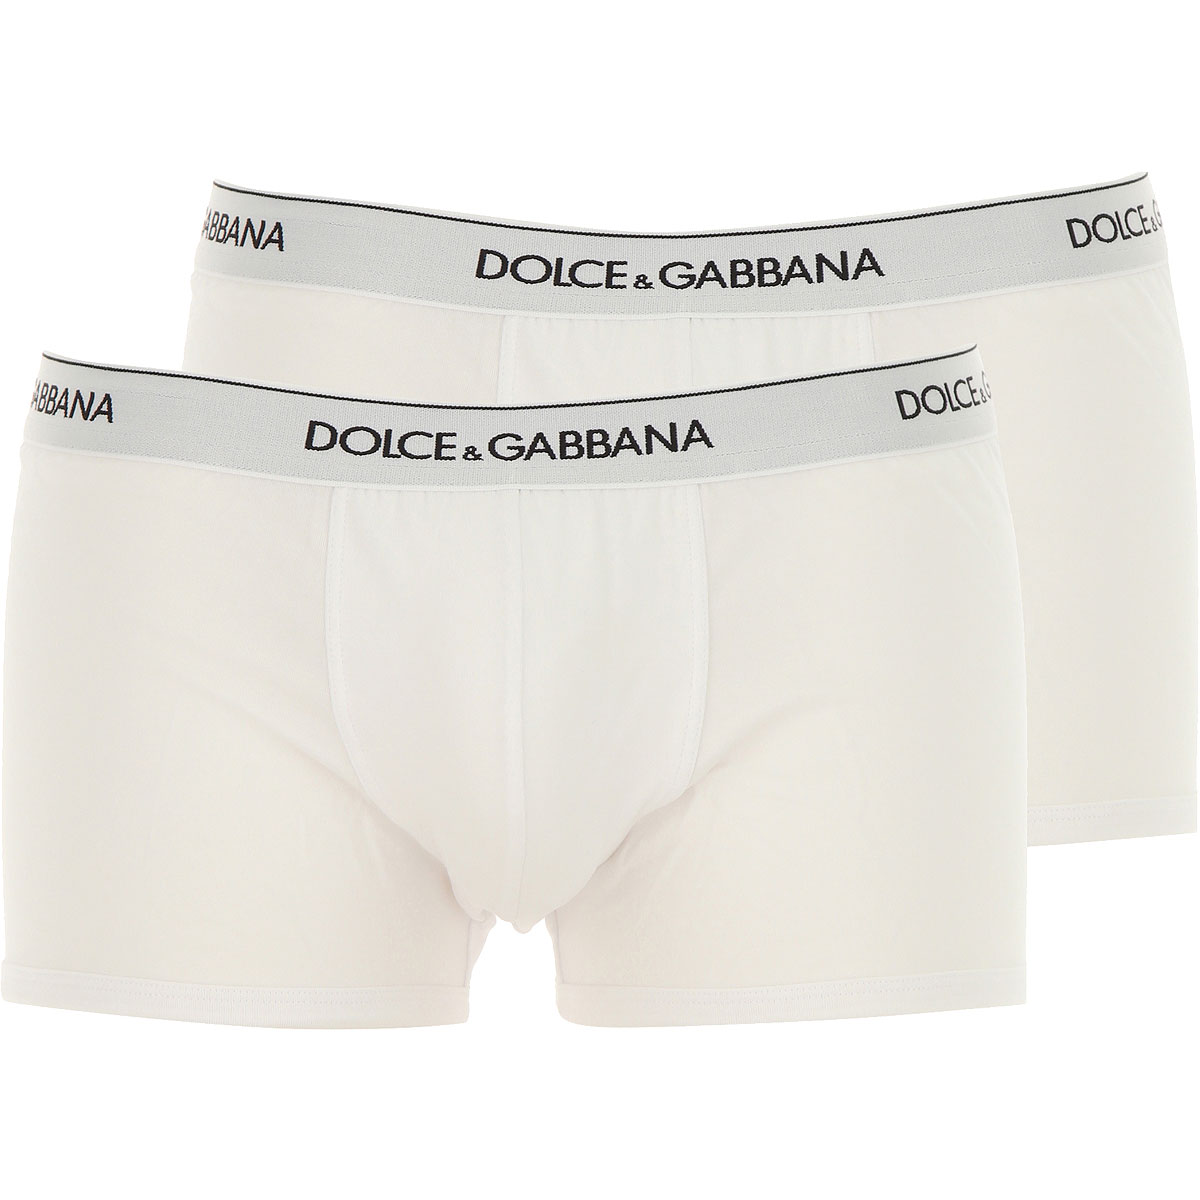 Dolce & Gabbana Boxer Shorts für Herren, Unterhose, Short, Boxer Günstig im Sale, 2 Pack, Grau Melange, Baumwolle, 2017, L M S XL